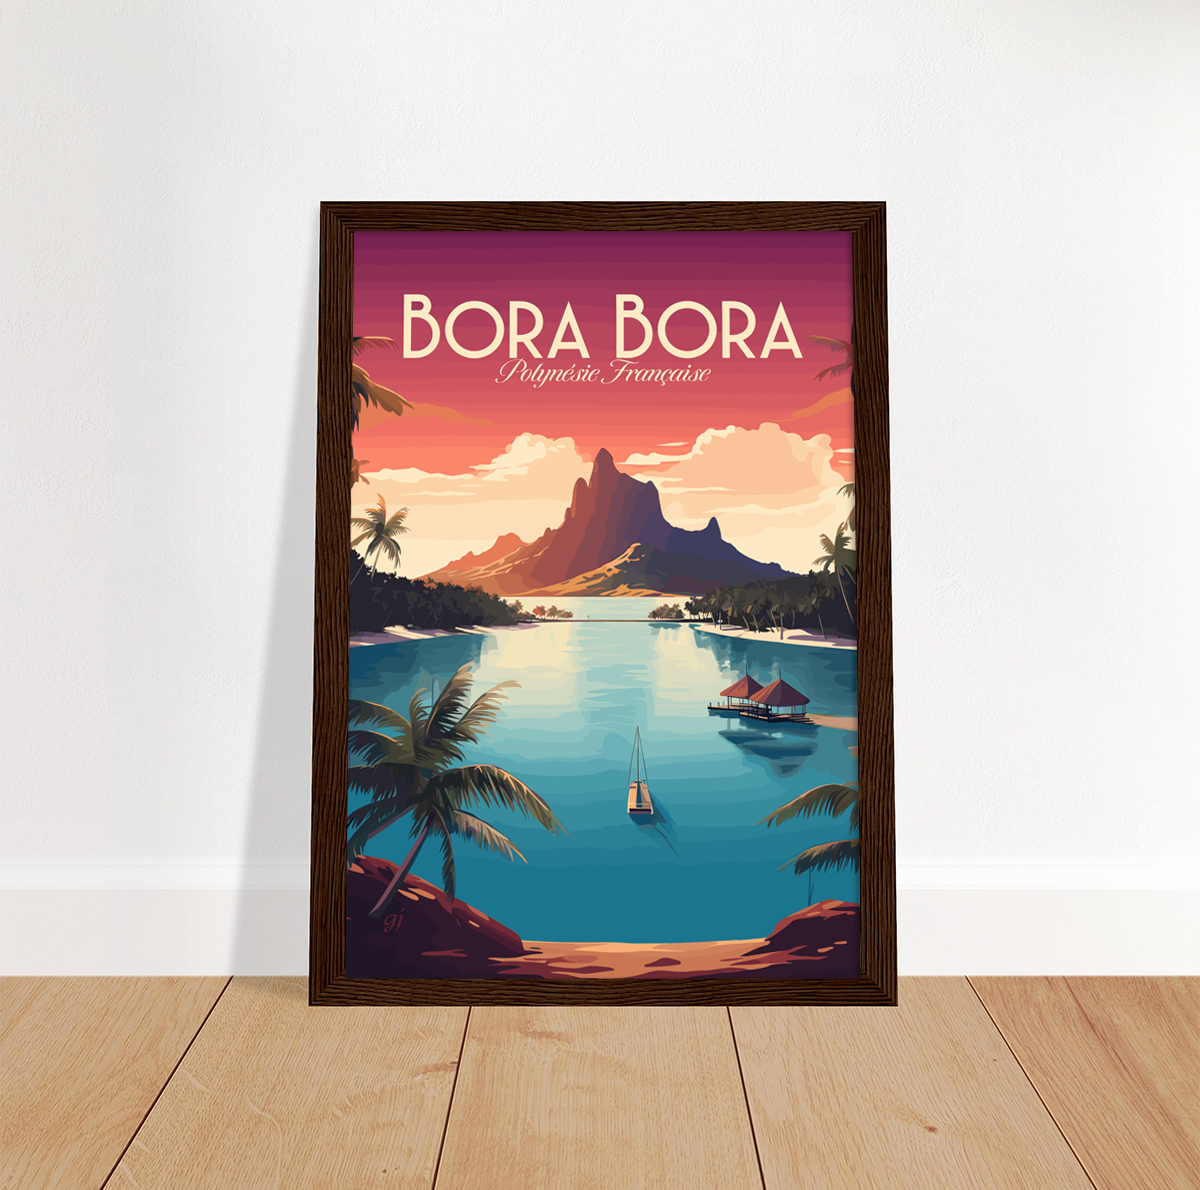 Bora Bora poster by bon voyage design